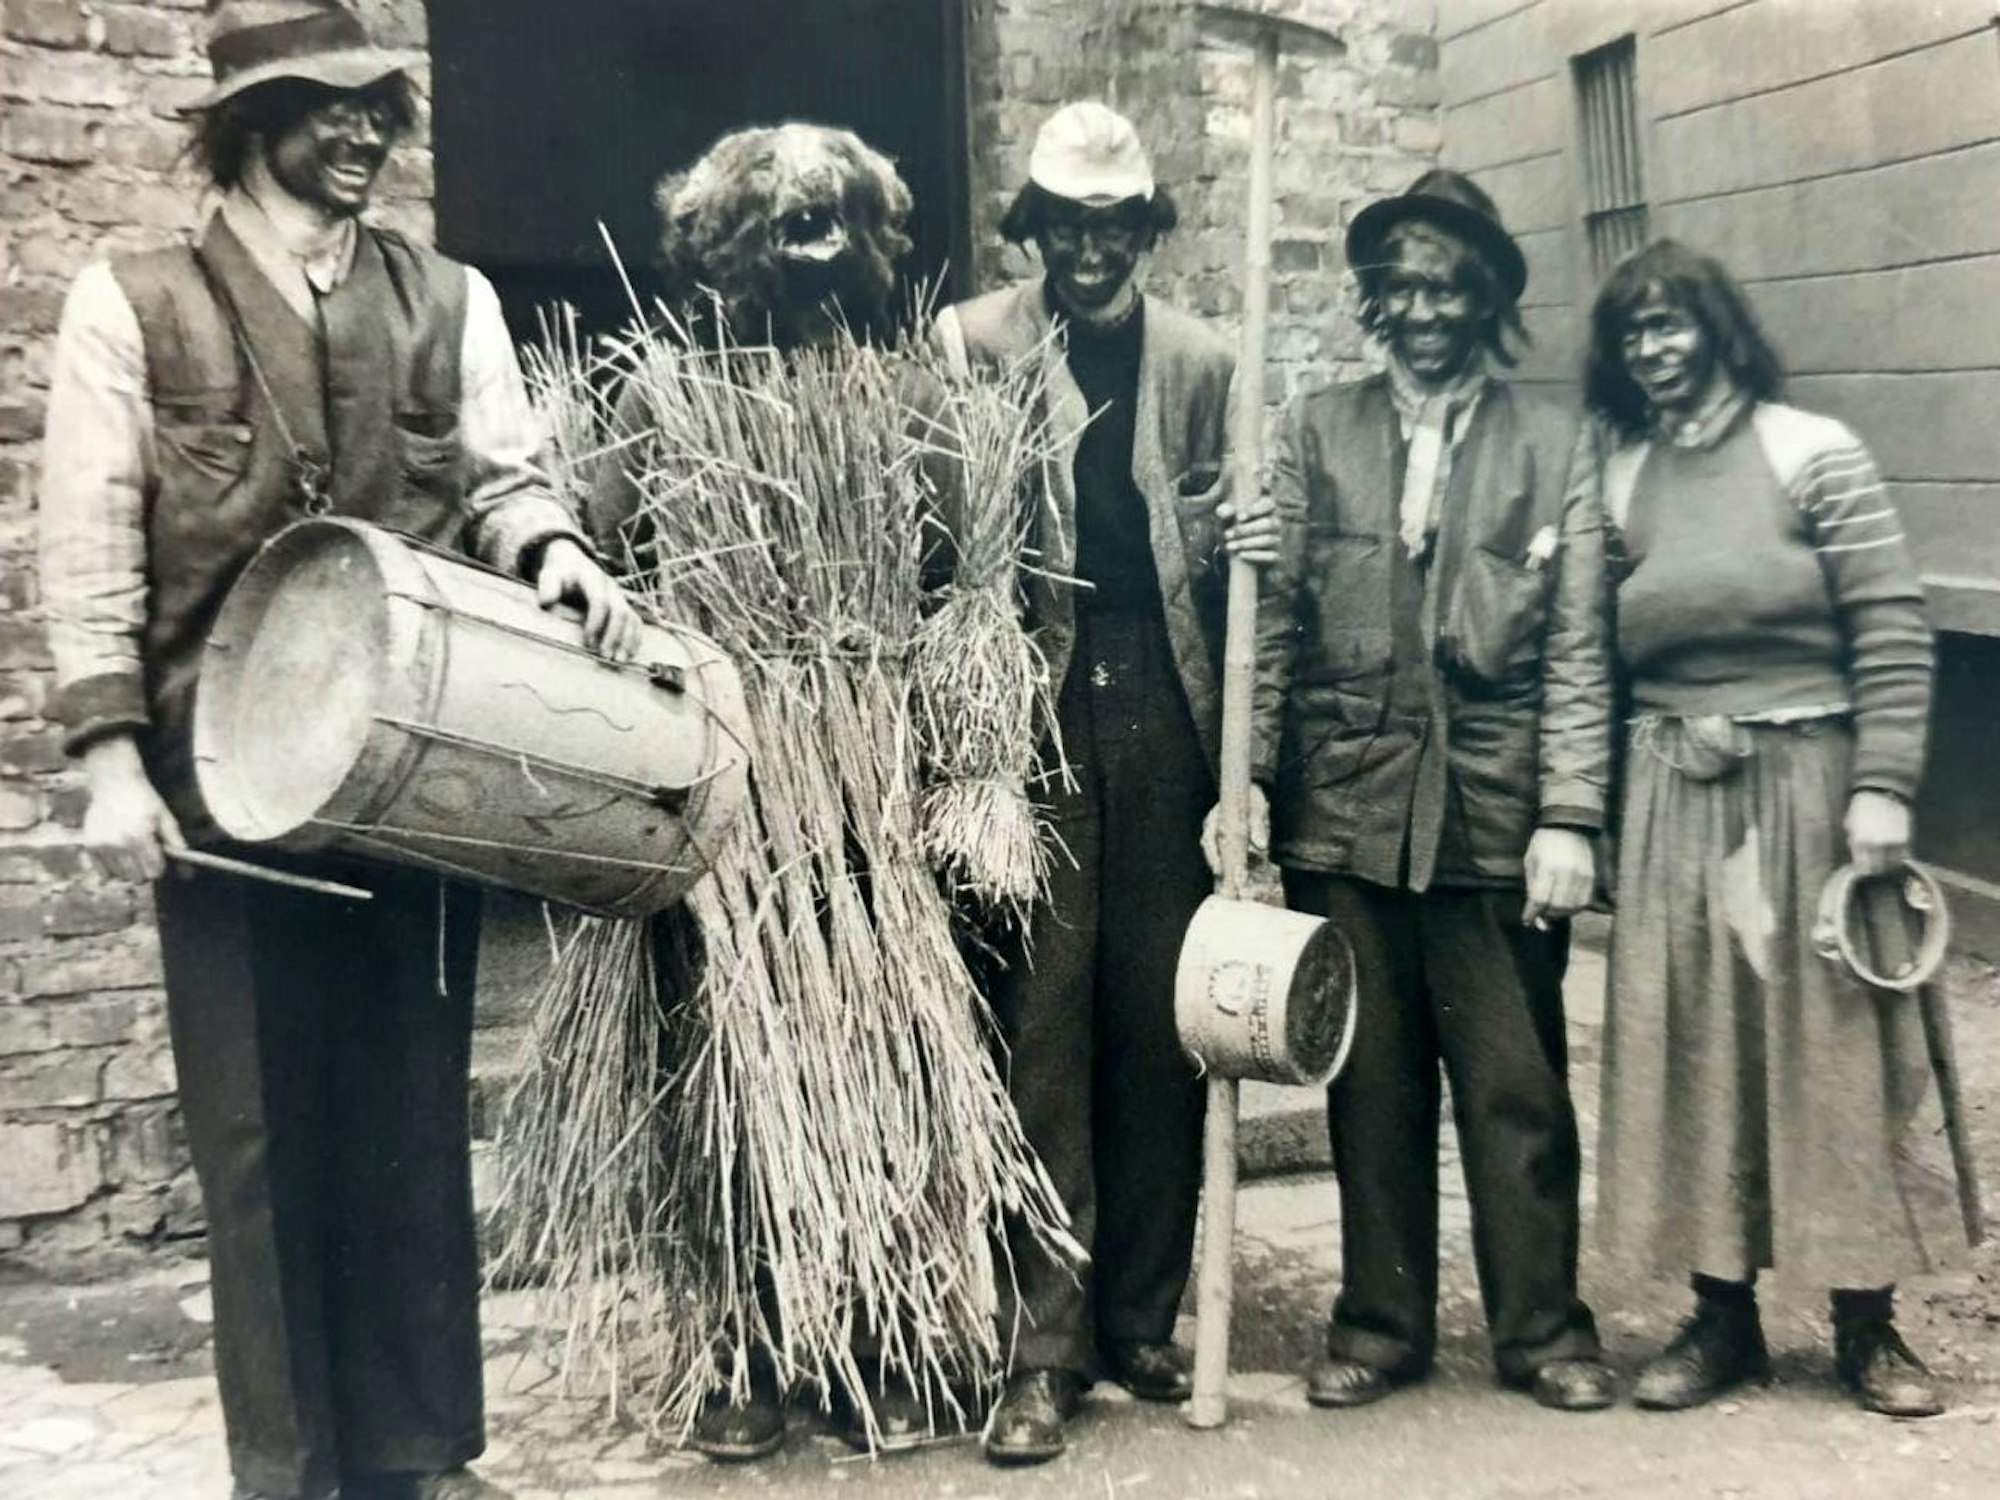 Der Ääzebär in Lohmar unterwegs,
ein Bild aus dem Jahre 1954